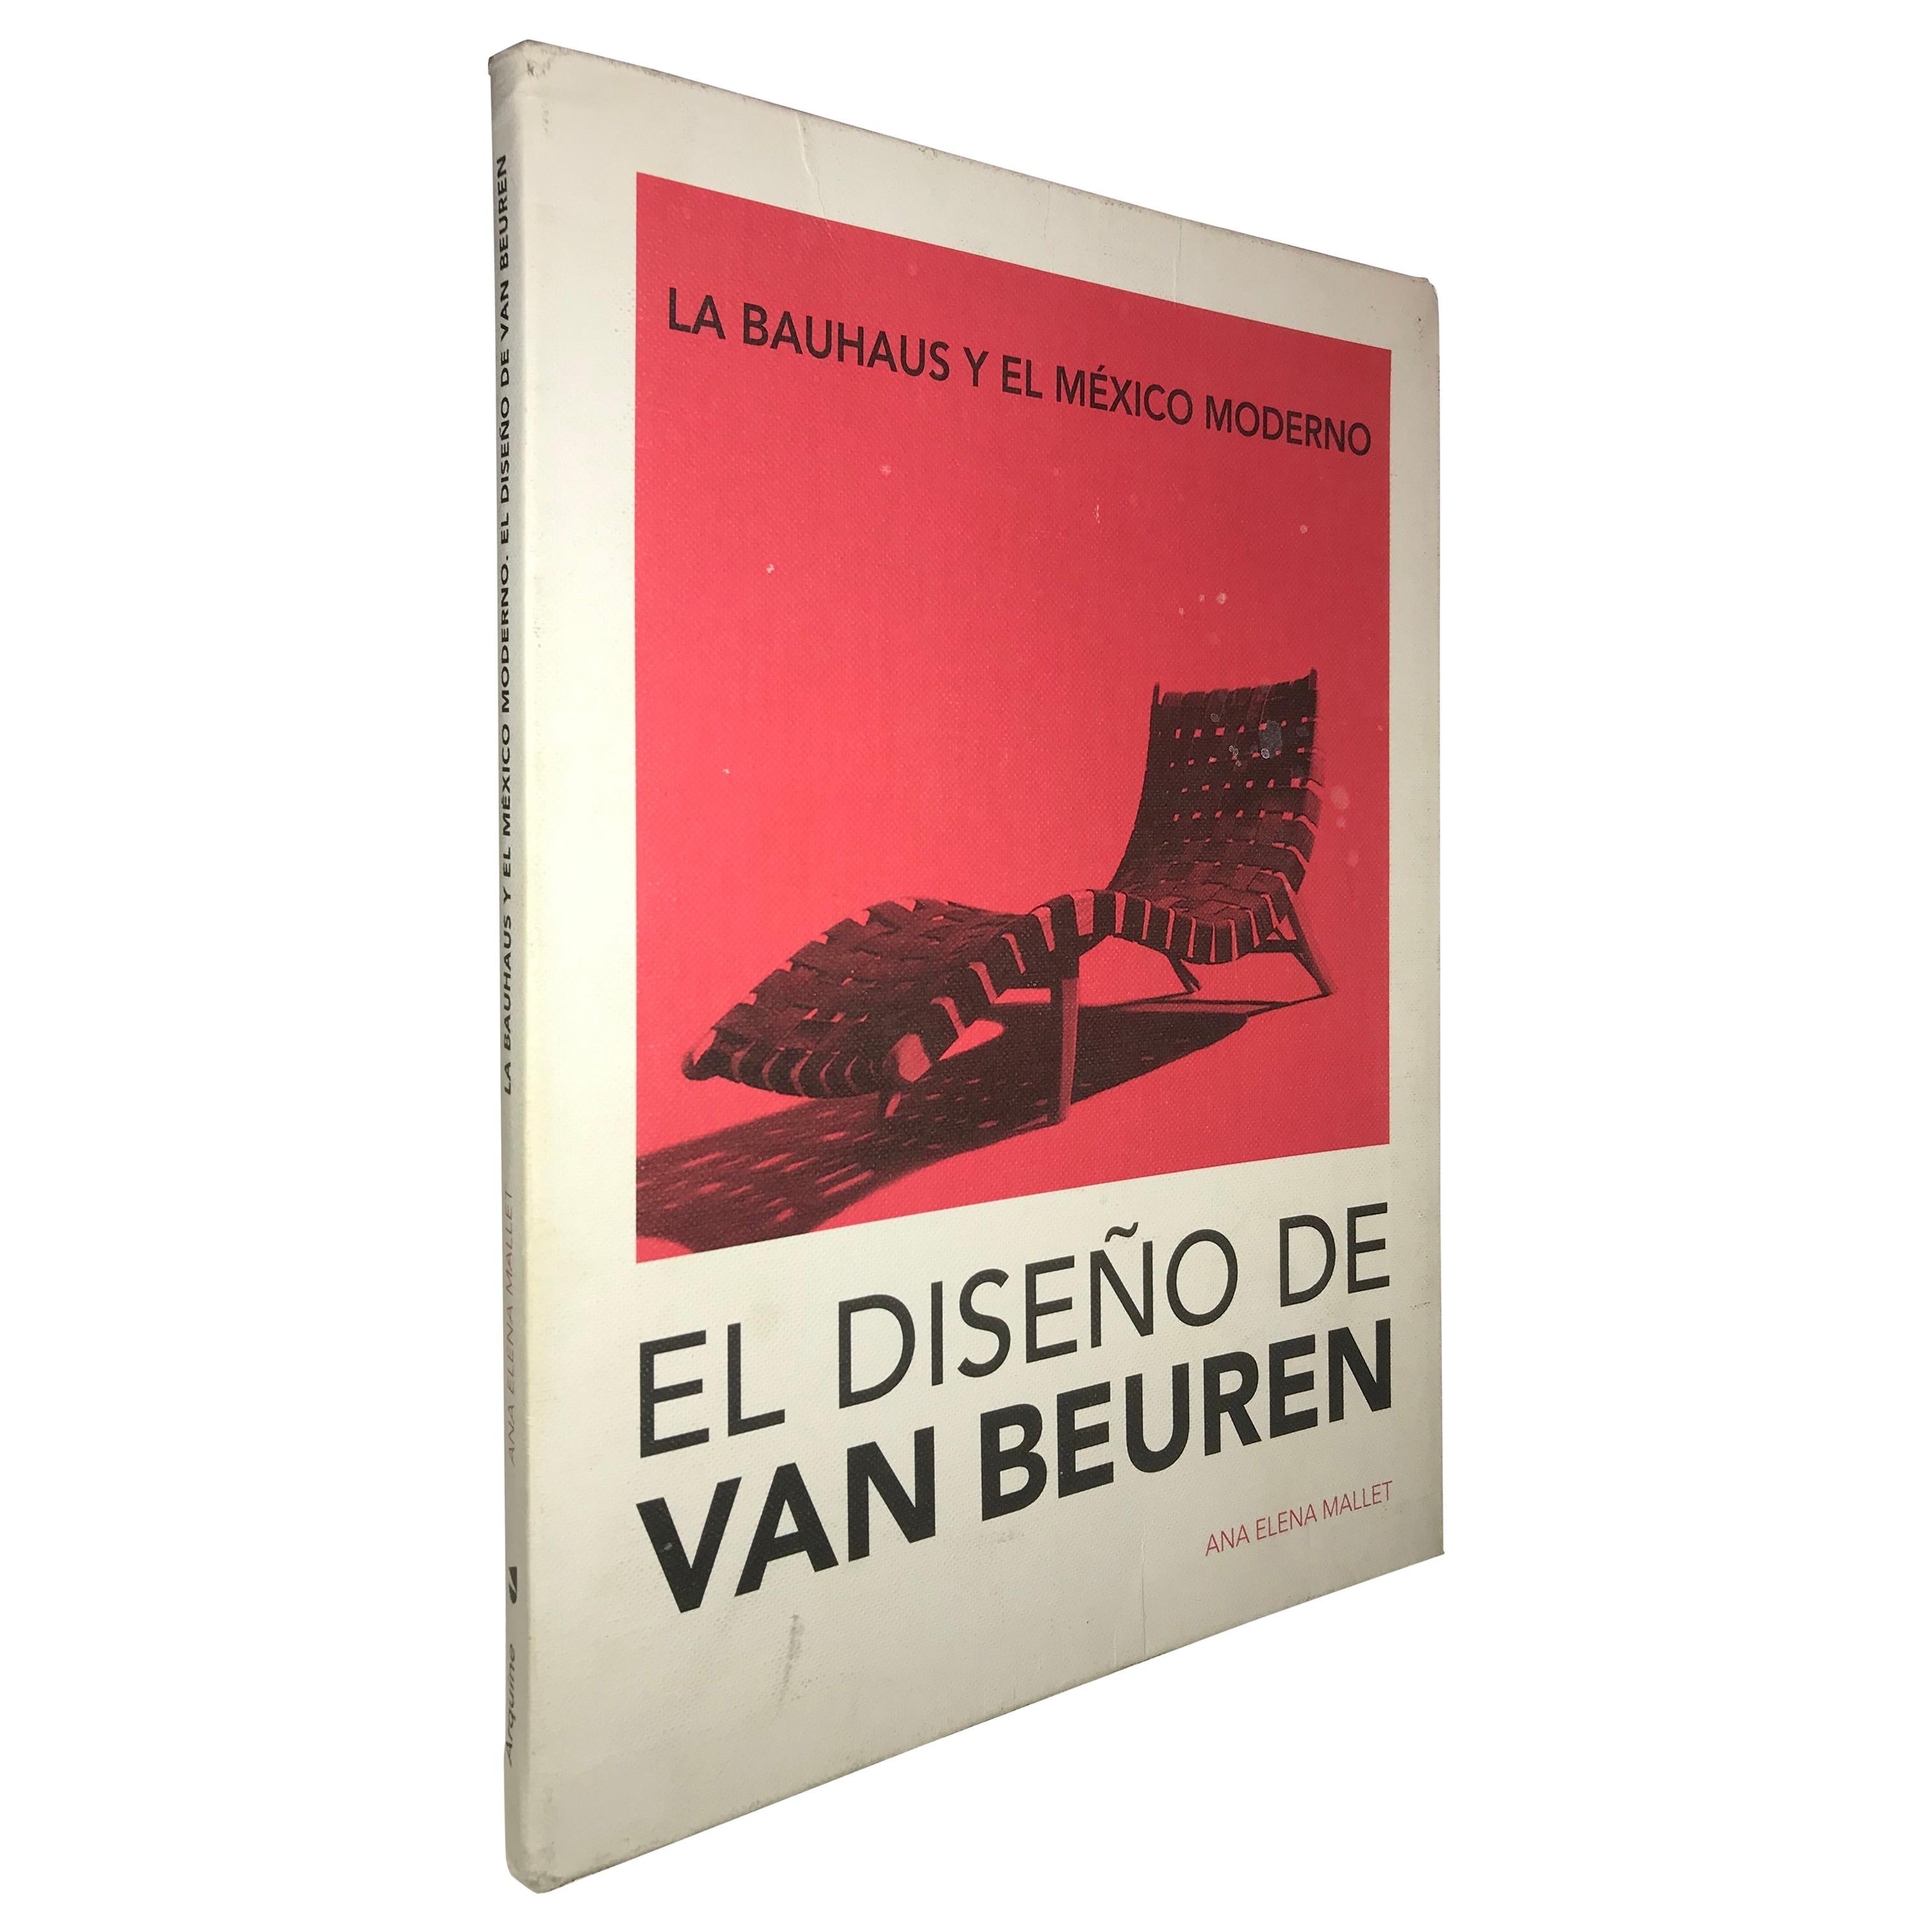 La Bauhaus y el México Moderno, EL Diseño de Van beuren Book by Ana Elena Mallet